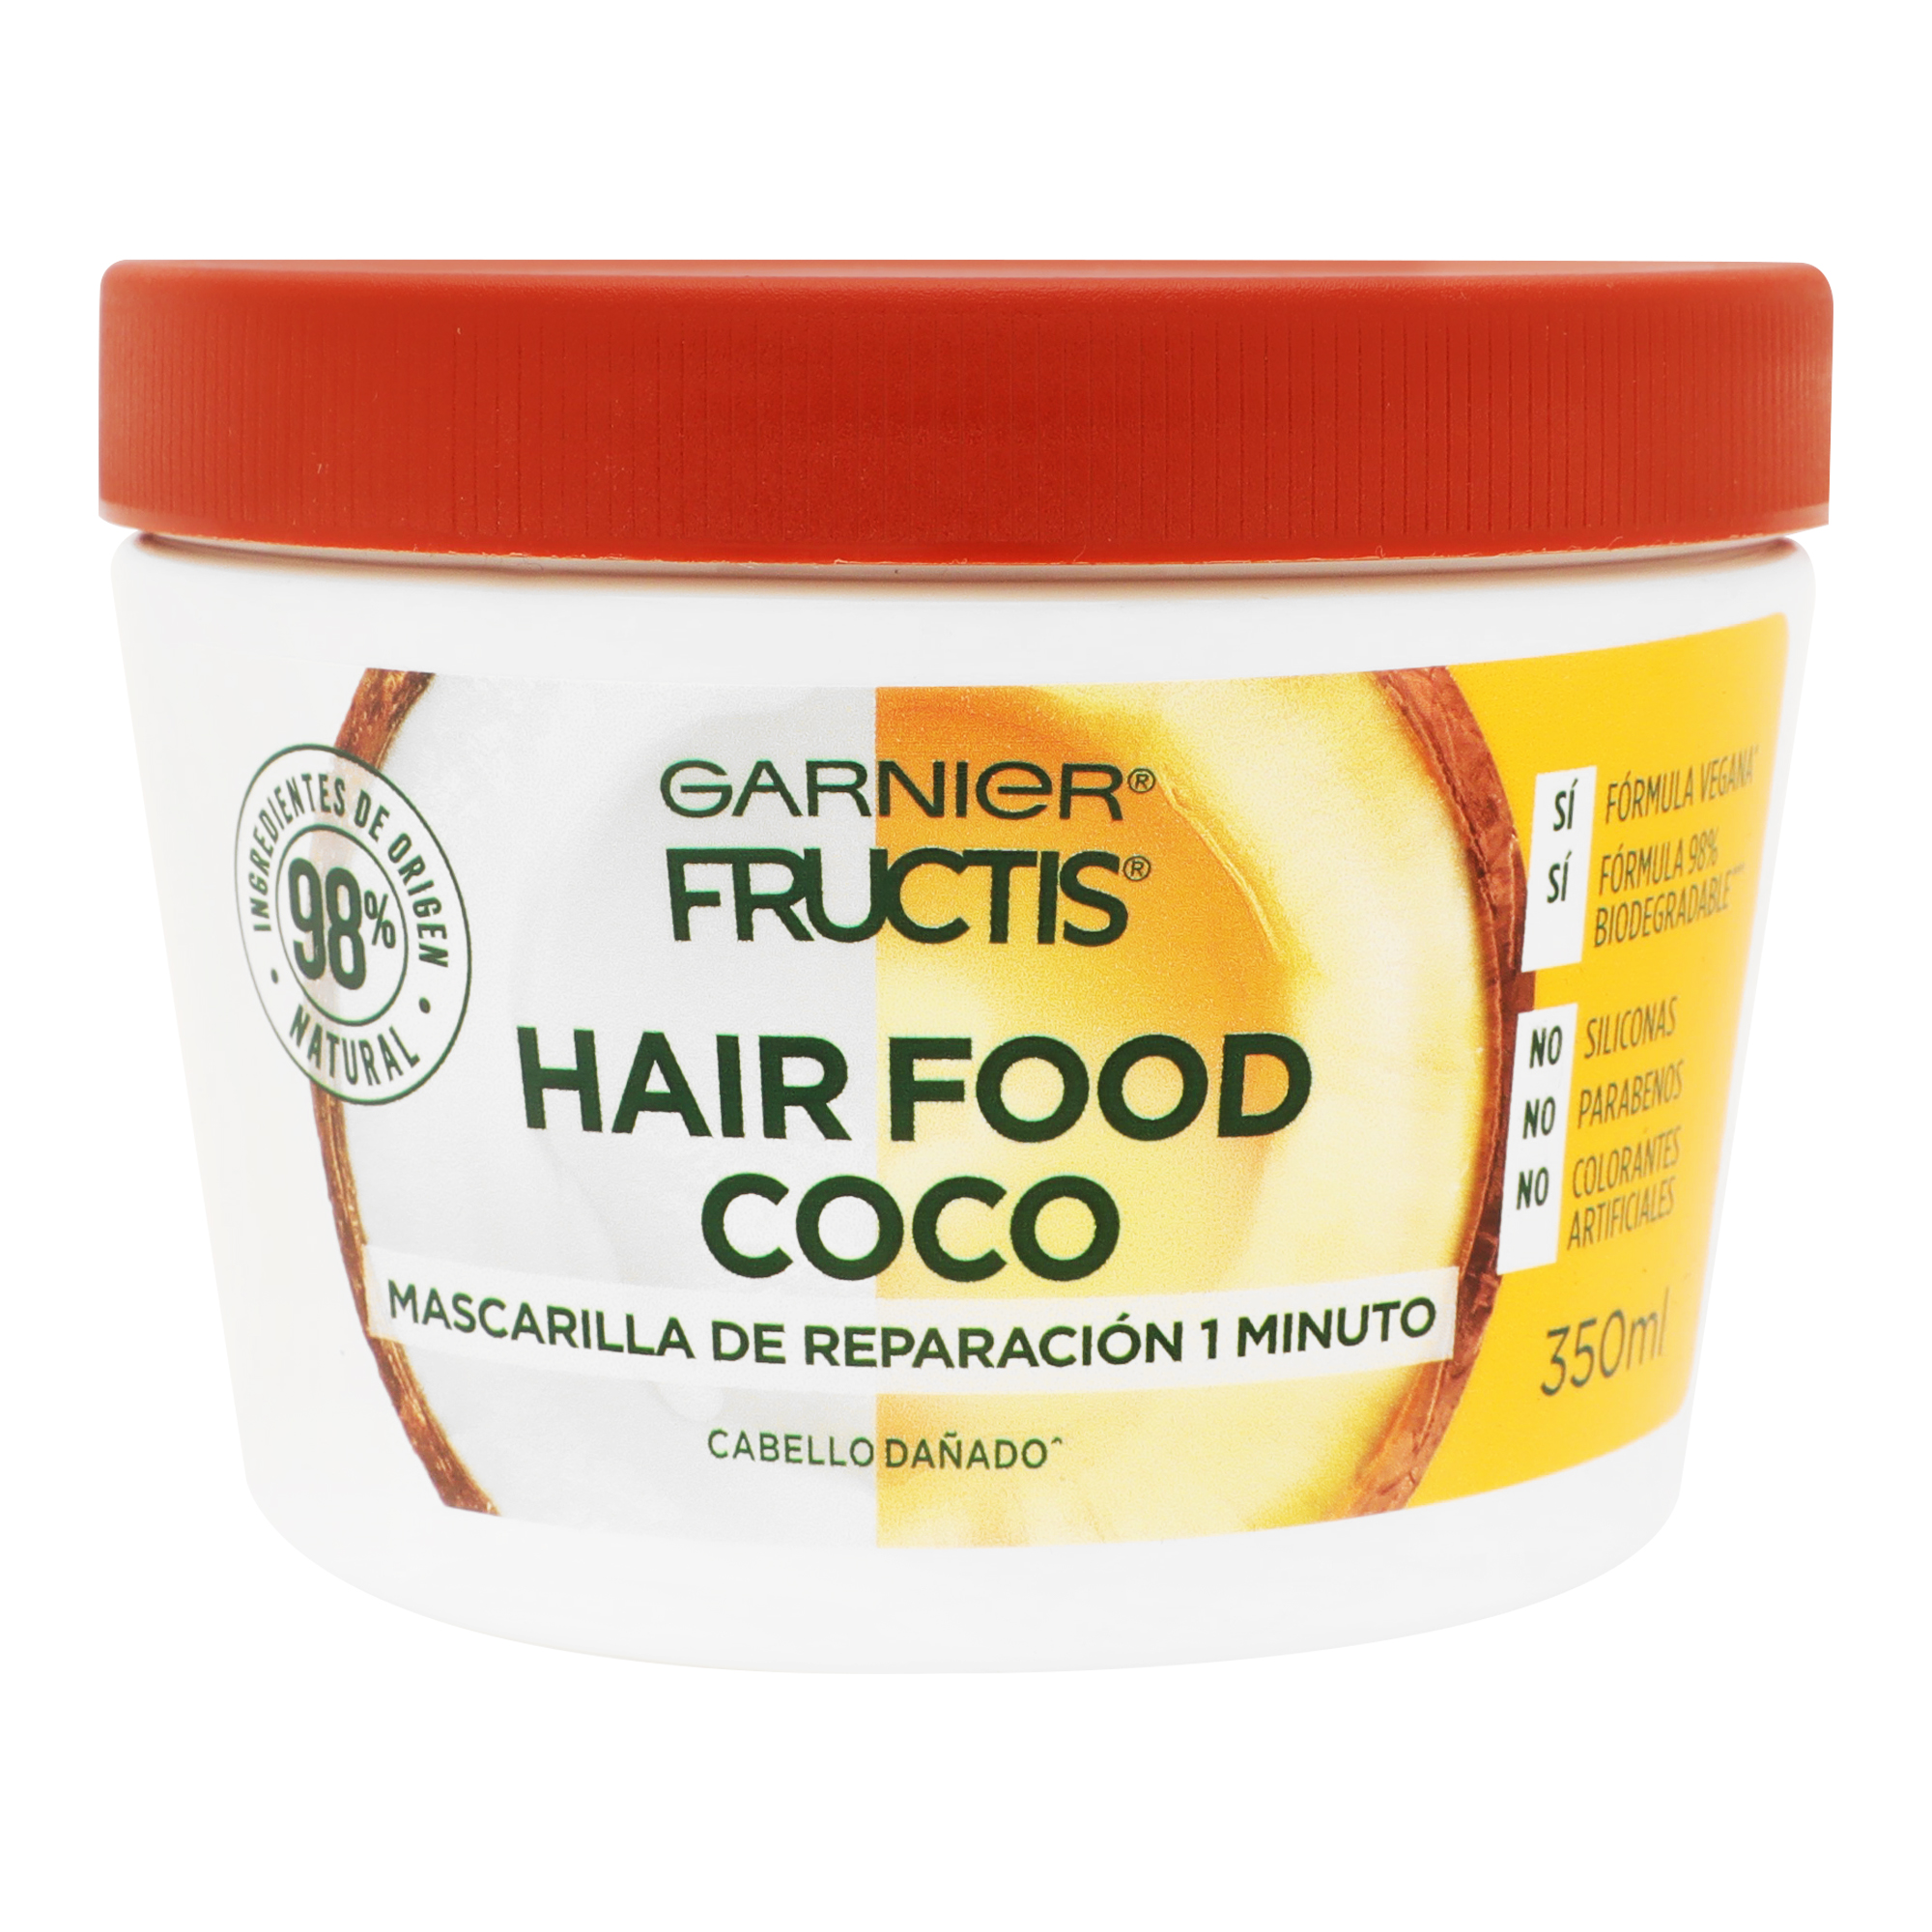 Cerebro inicial innovación Mascarilla Garnier Fructis Hair Food Coco 350 ml | DelSol